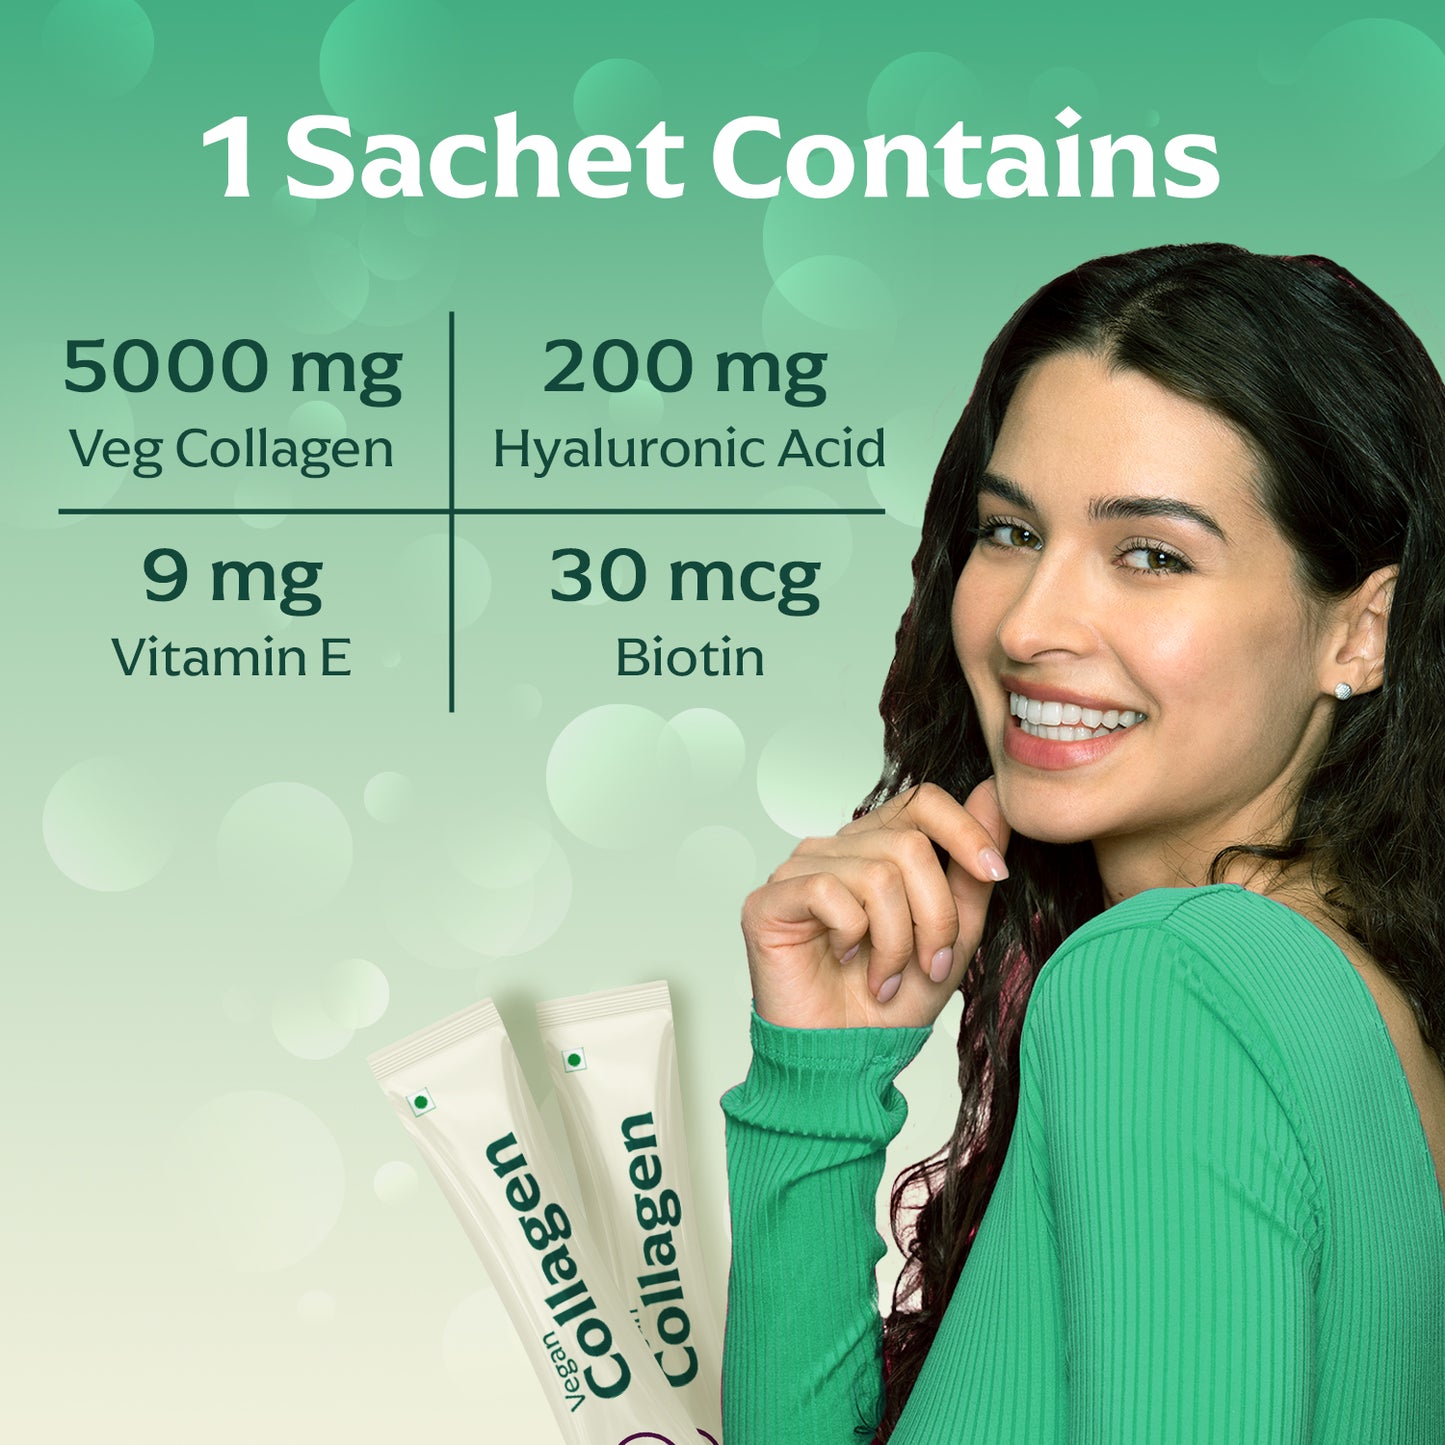 Panchamrit Vegan Collagen Powder| Lychee Flavour